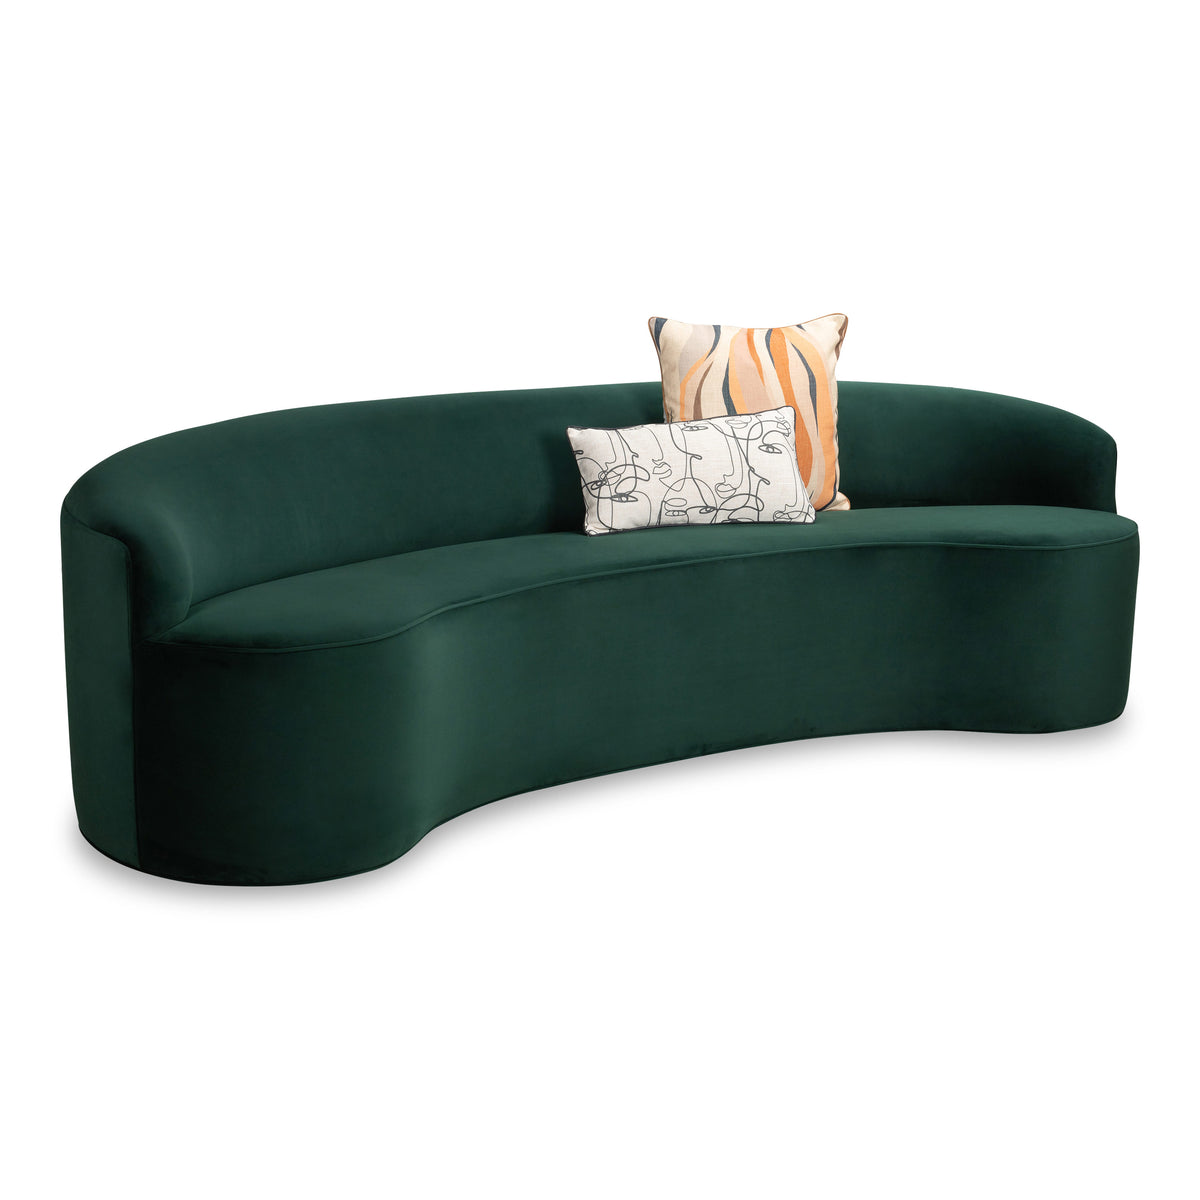 Tropical Curve Sofa in Evergreen Velvet